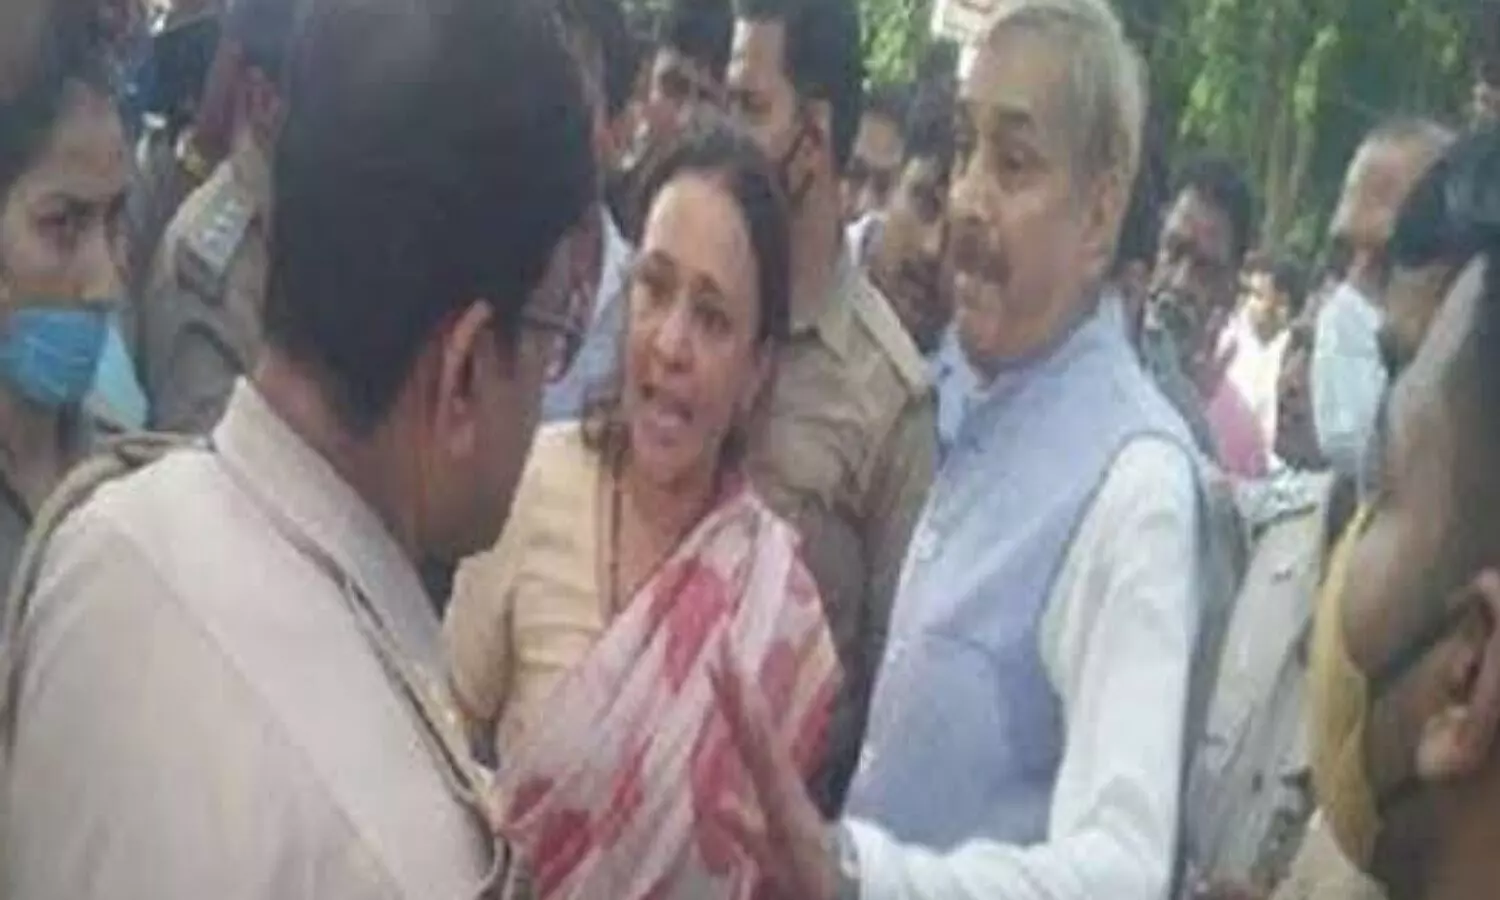 Congress leader Pramod Tiwari Legislature leader Aradhana Mishra